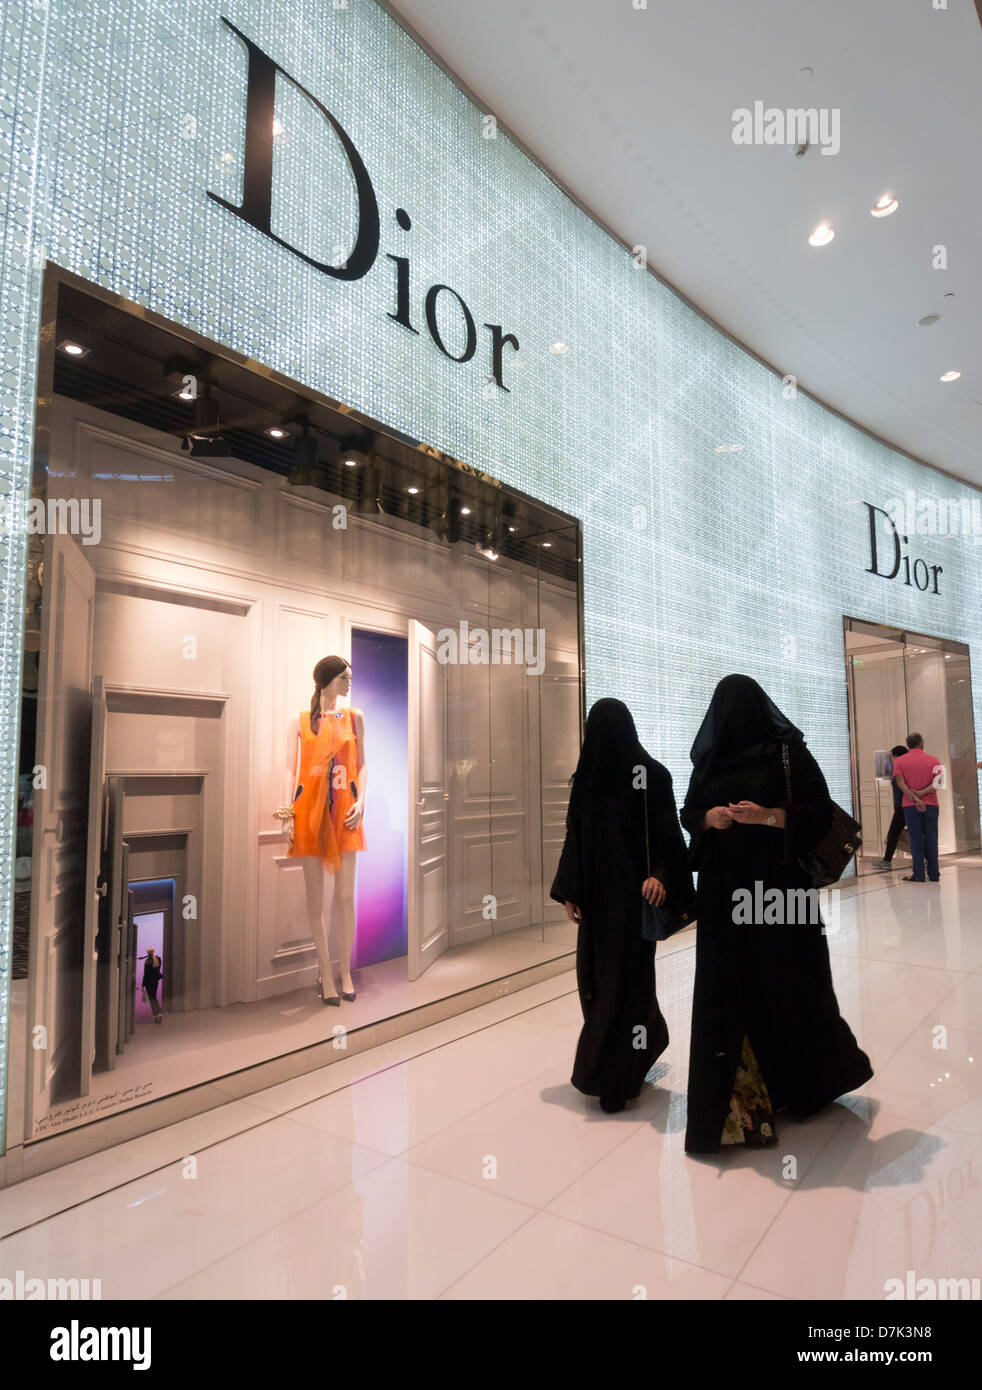 Dior Boutique und Shopper in der Dubai Mall in Dubai Vereinigte Arabische Emirate Stockfoto